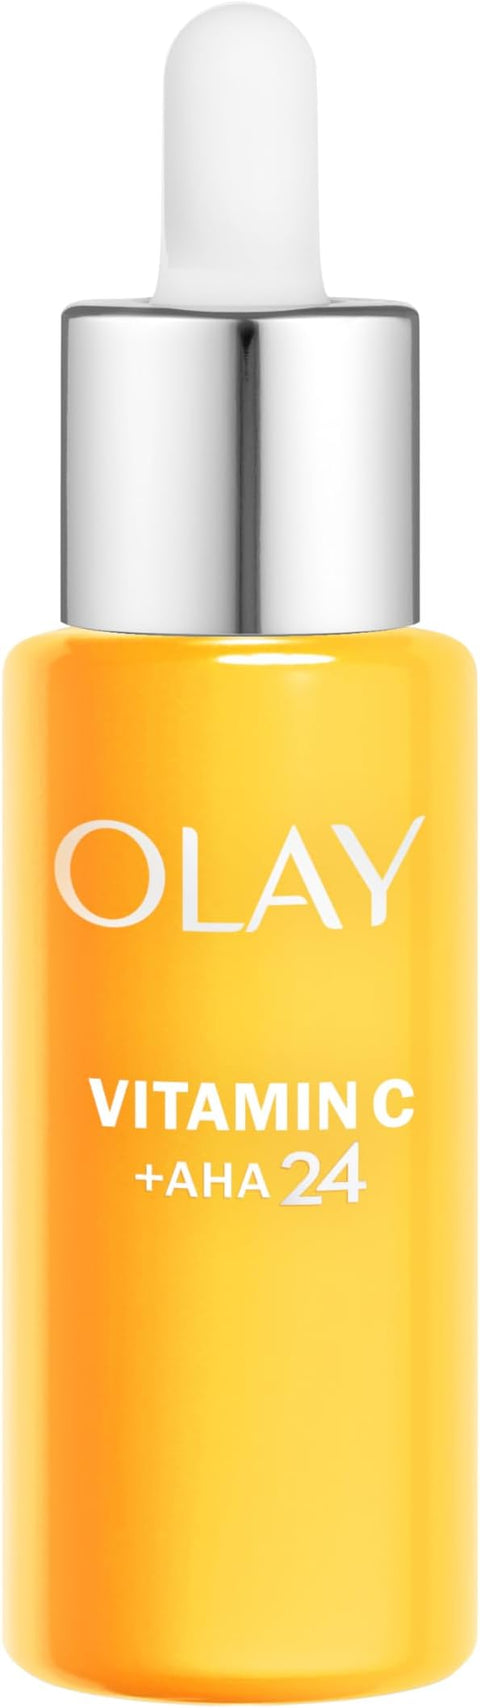 Olay Regenerist Vitamin C +AHA 24 Serum - 40ml